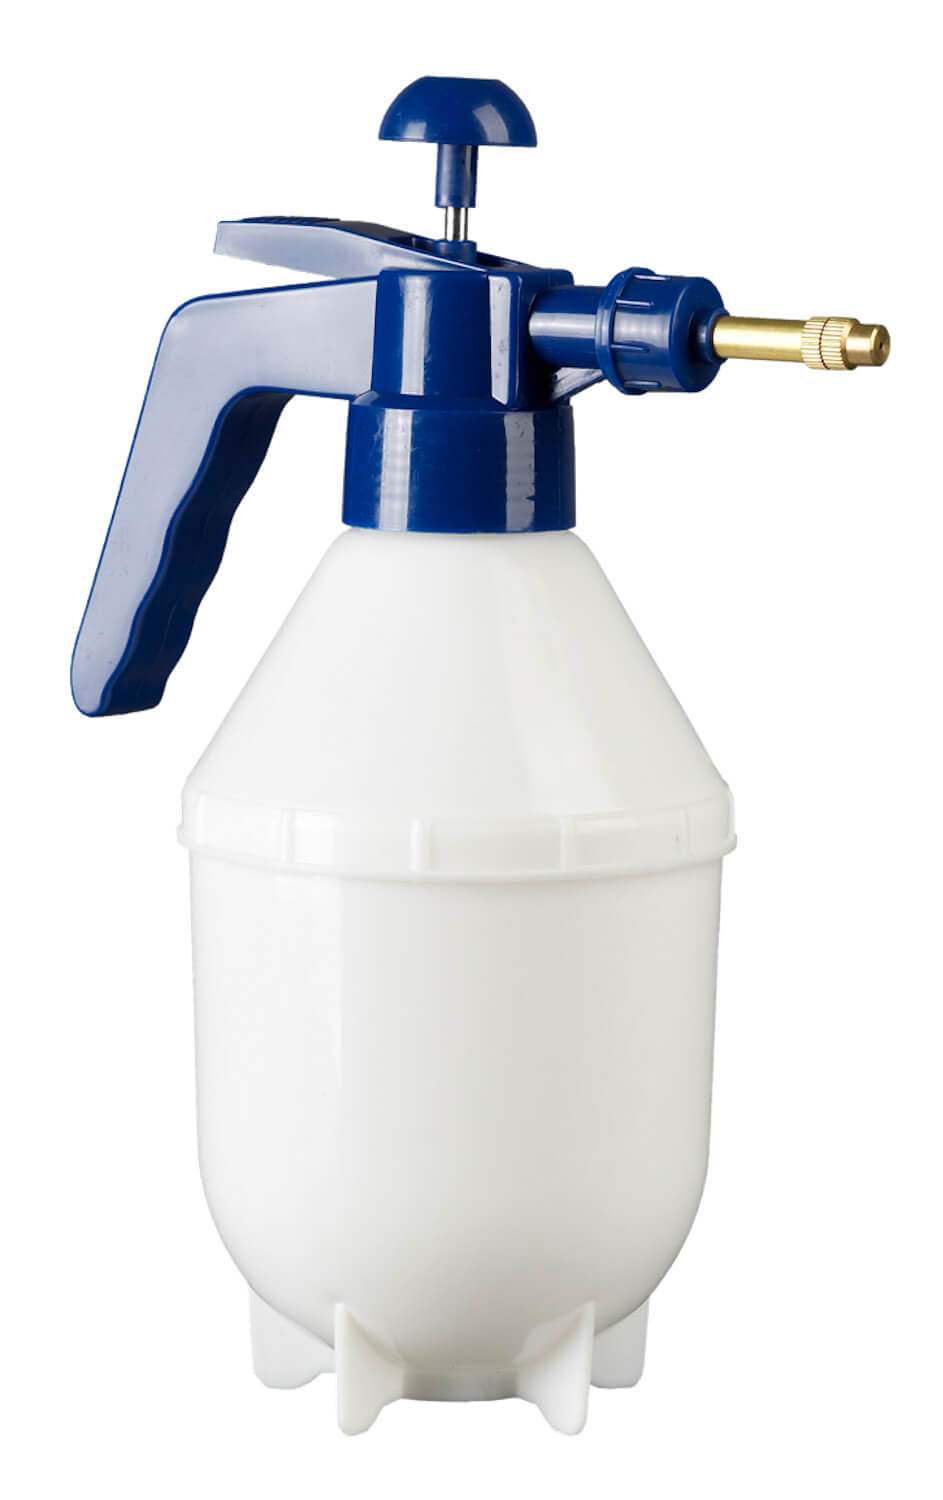 Hochwertiger Industrie-Pump-Zerstäuber mit 1,0 Ltr. PE-Behälter für den professionellen Einsatz in Industrie und Handwerk.